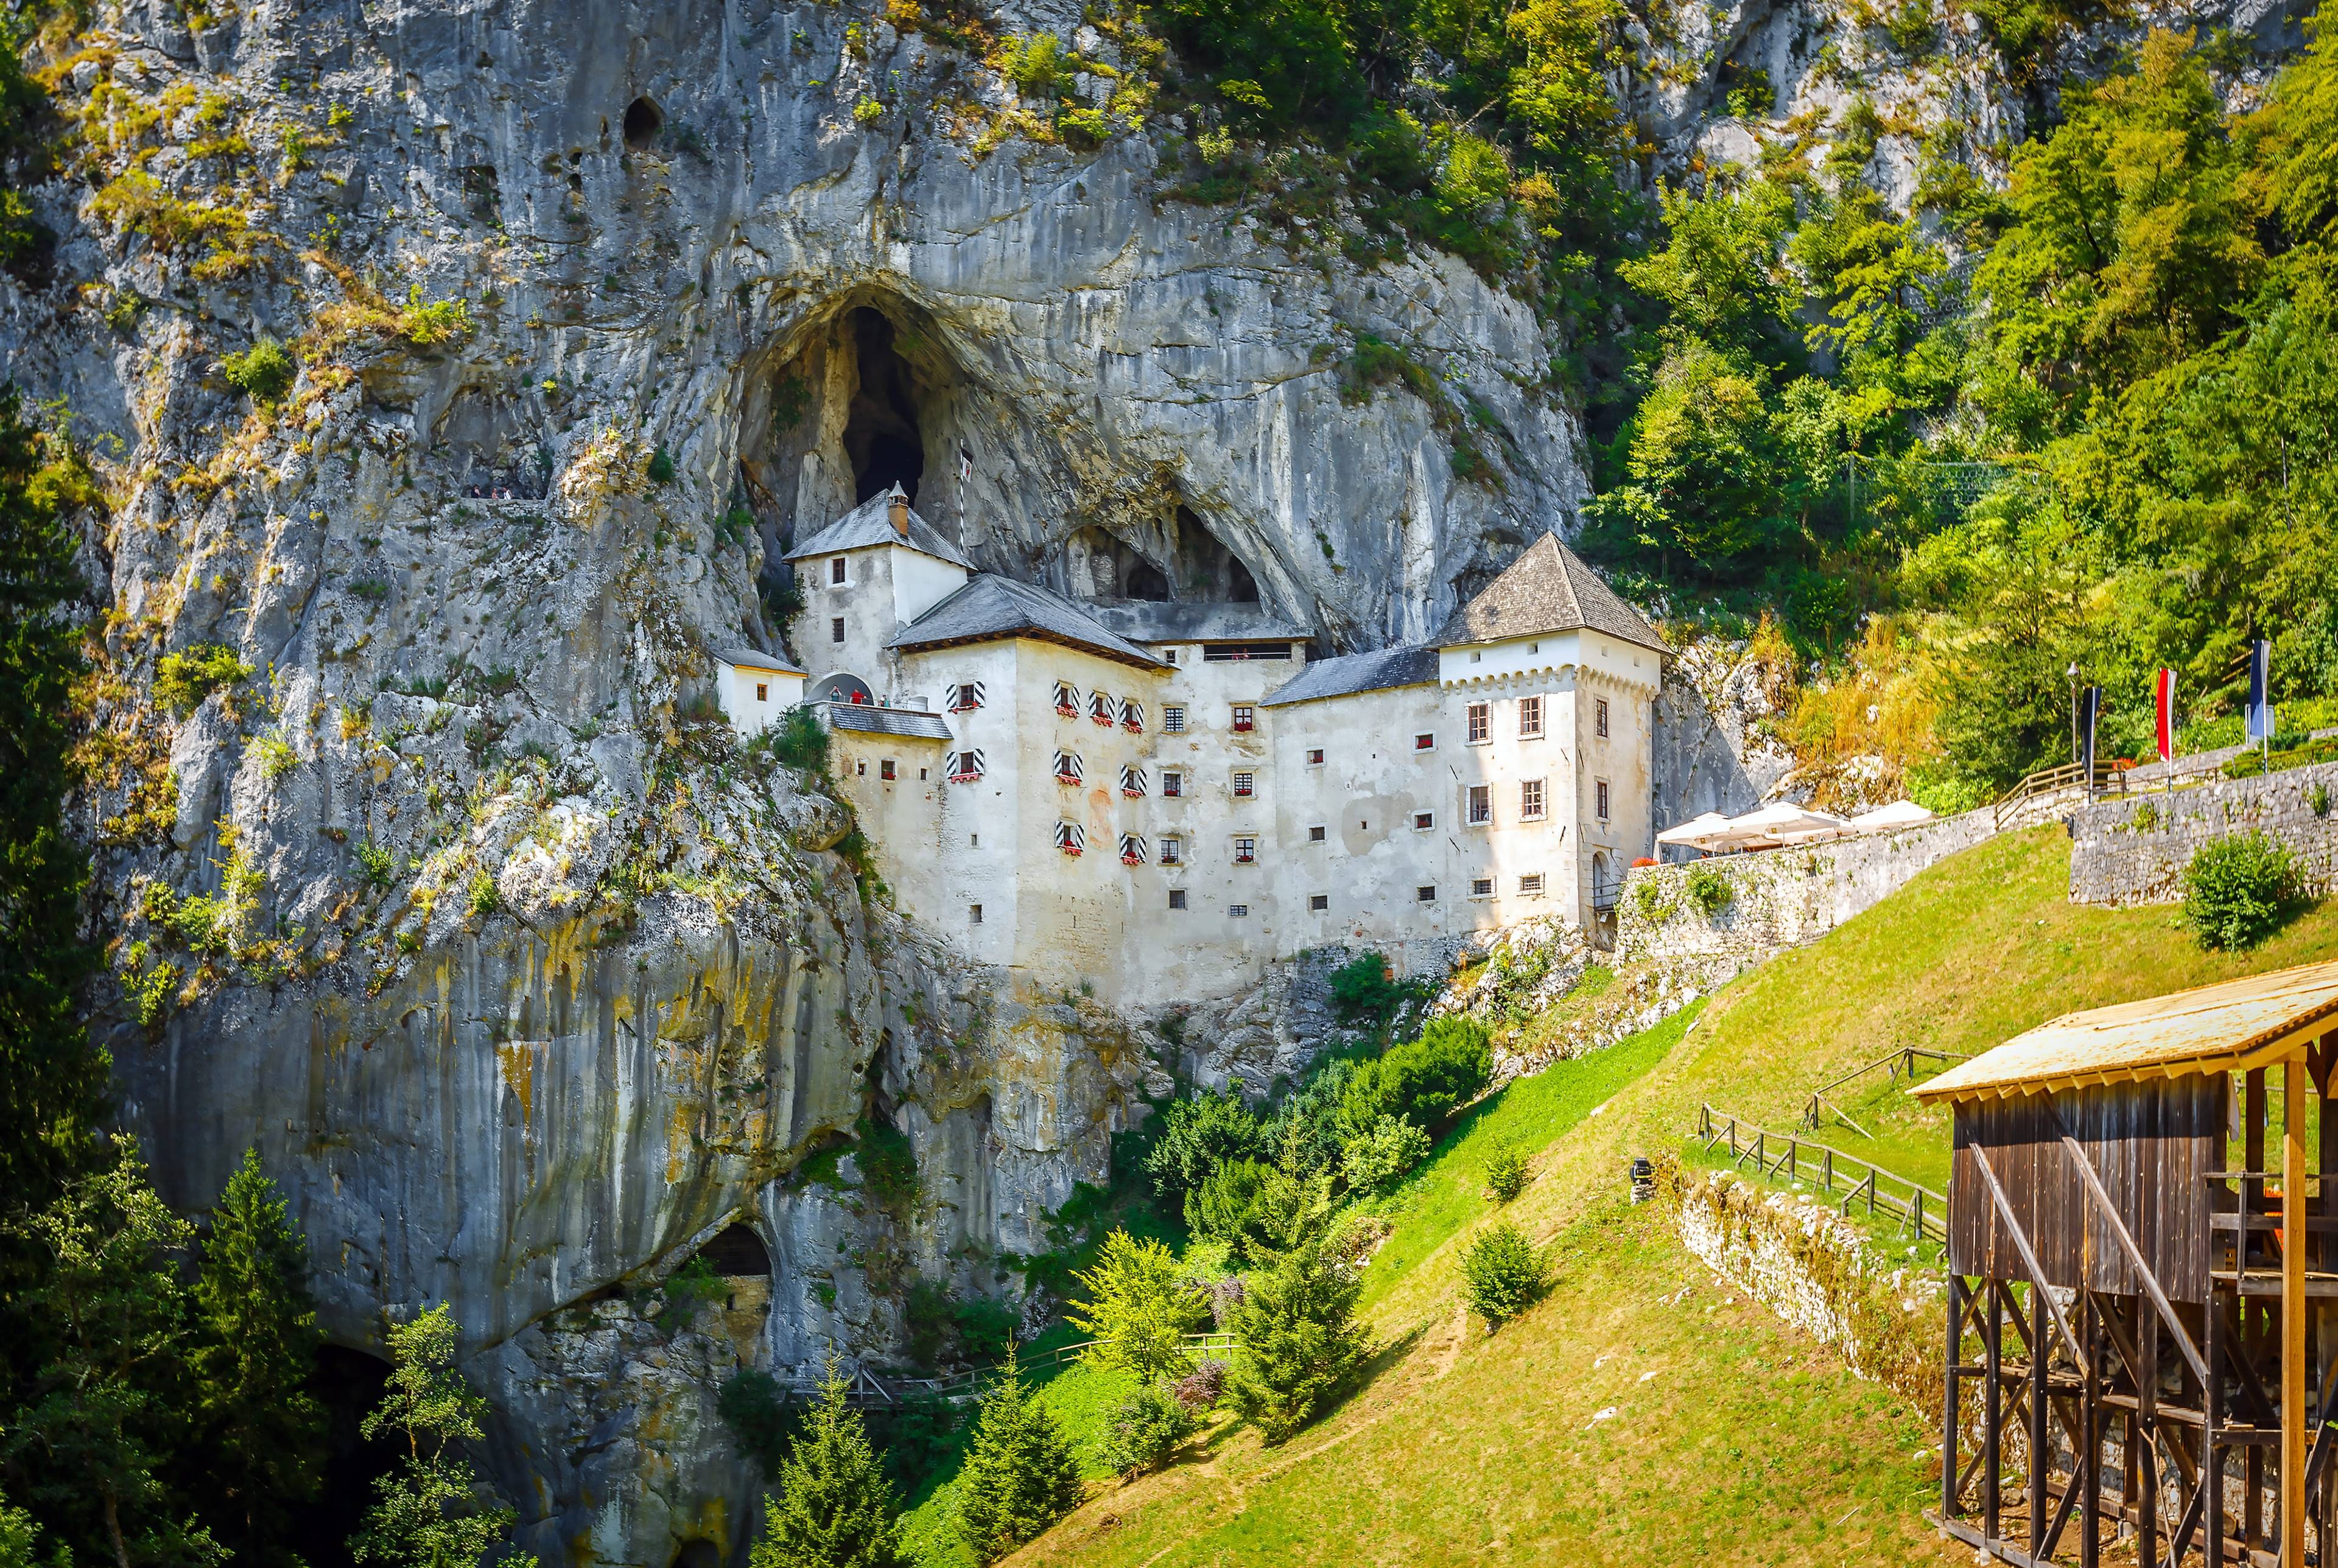 ⚡ Viaggio in famiglia: Grotte, castelli e saline in Slovenia